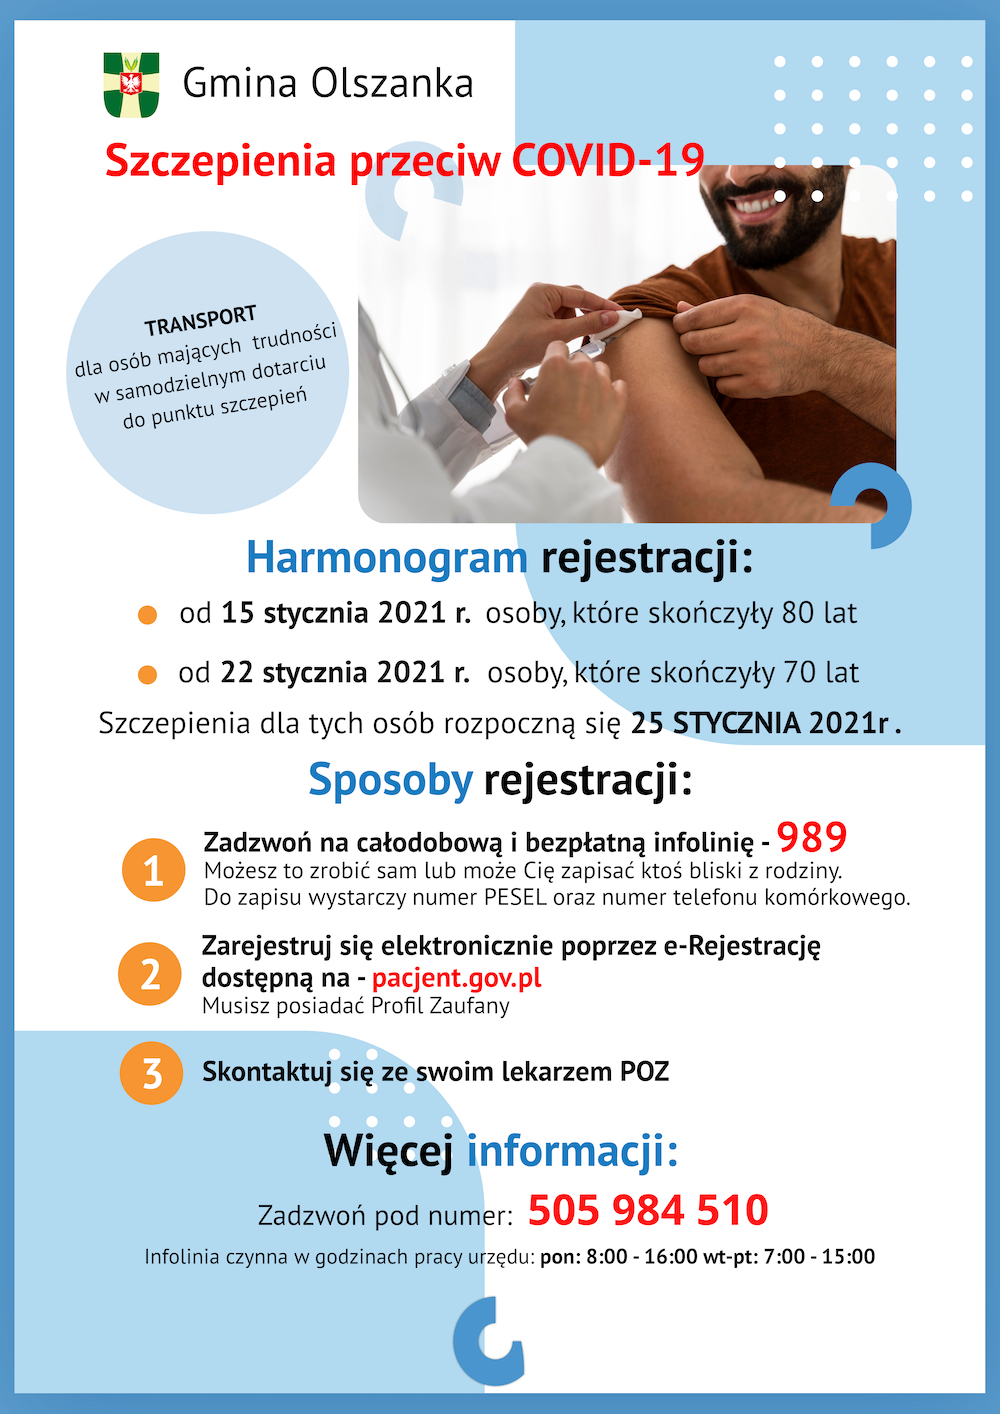 Szczepienia przeciw COVID-19 w Gminie Olszanka - broszura informacyjna